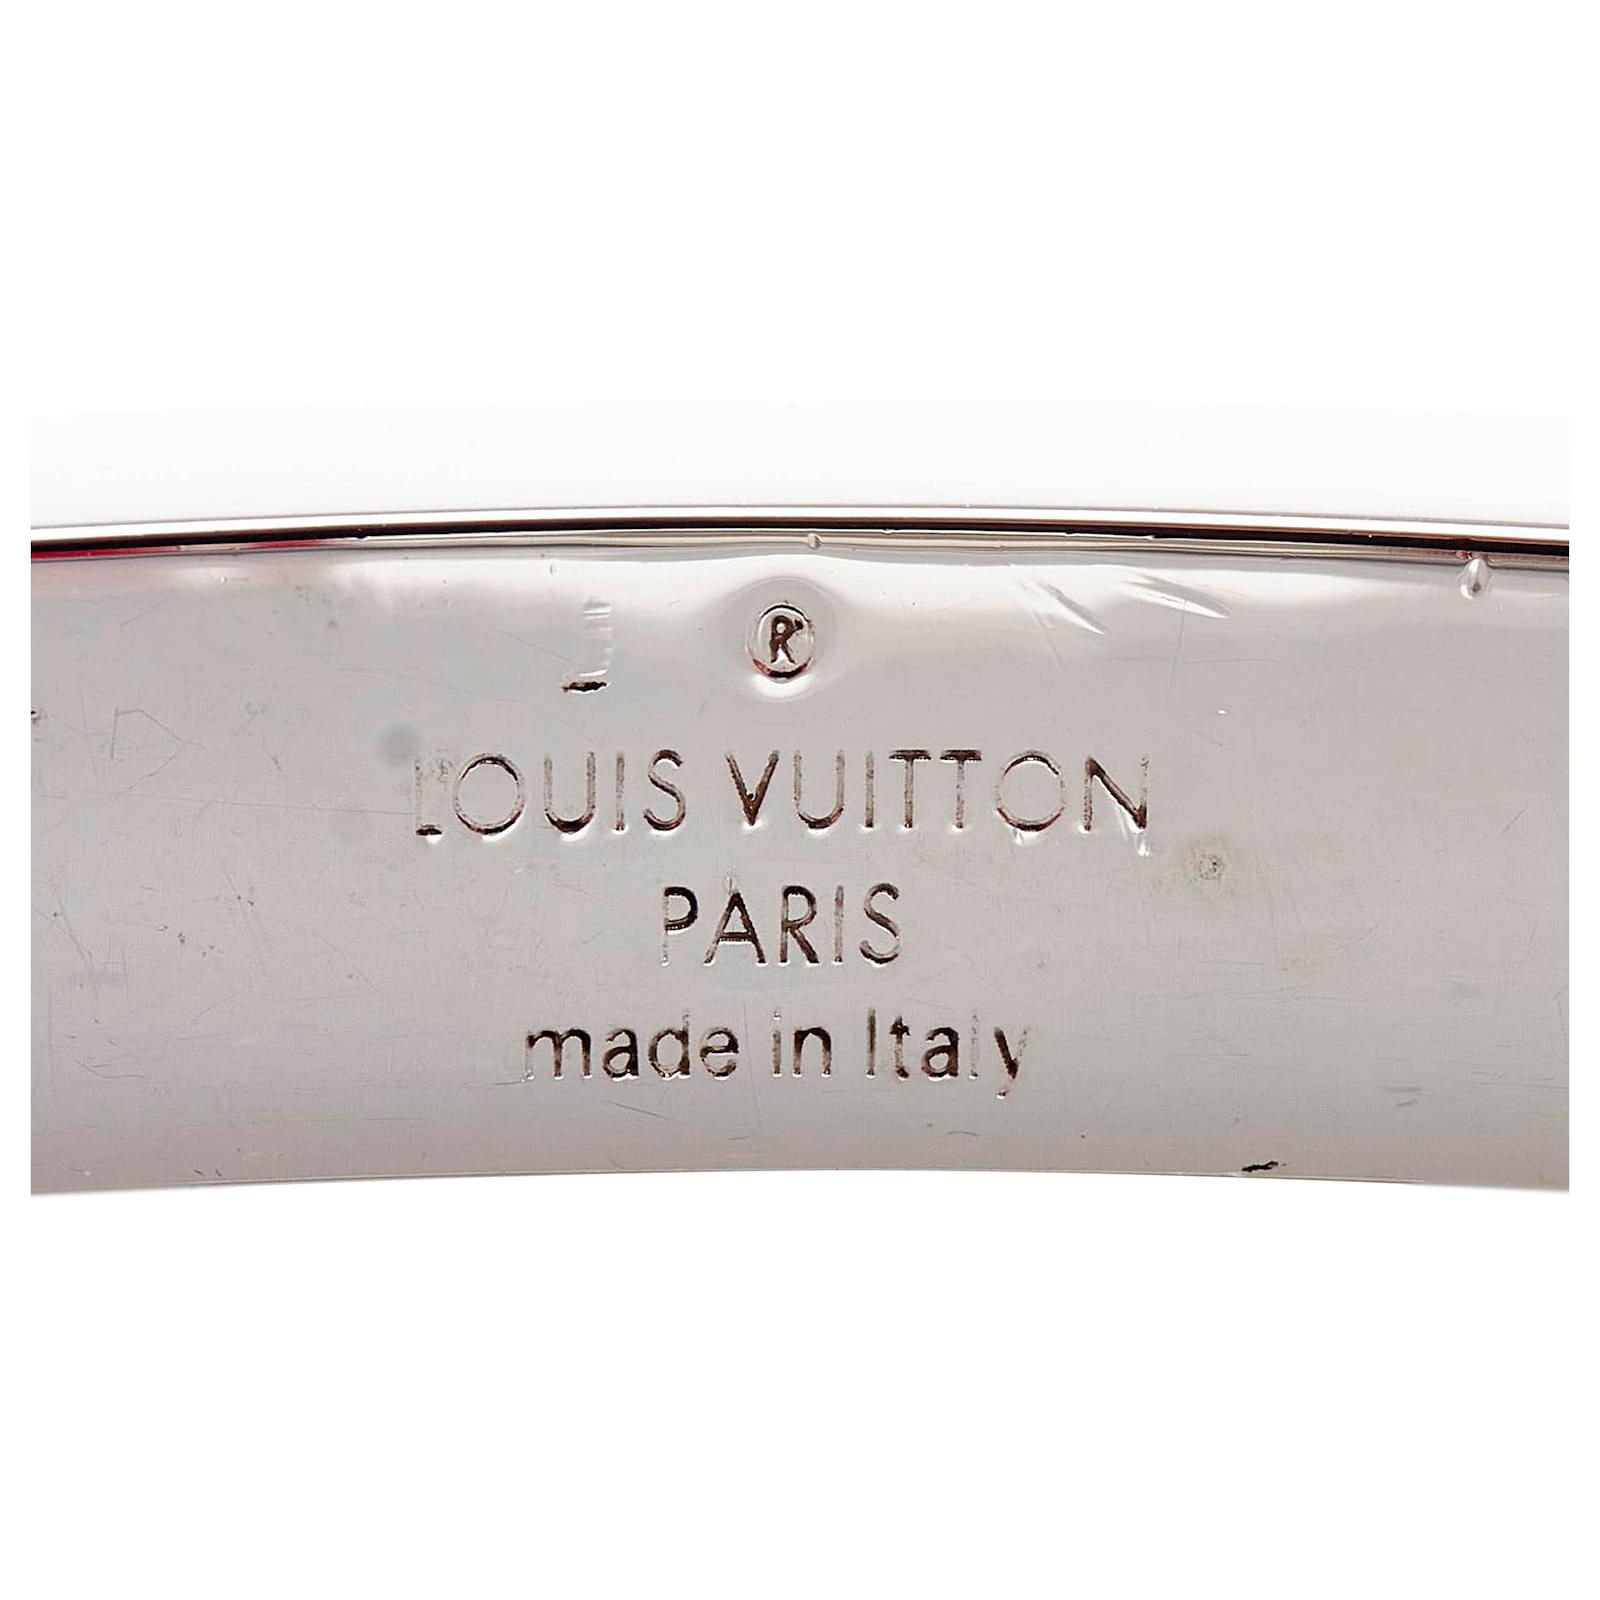 Louis Vuitton Space LV Bracelet, Red